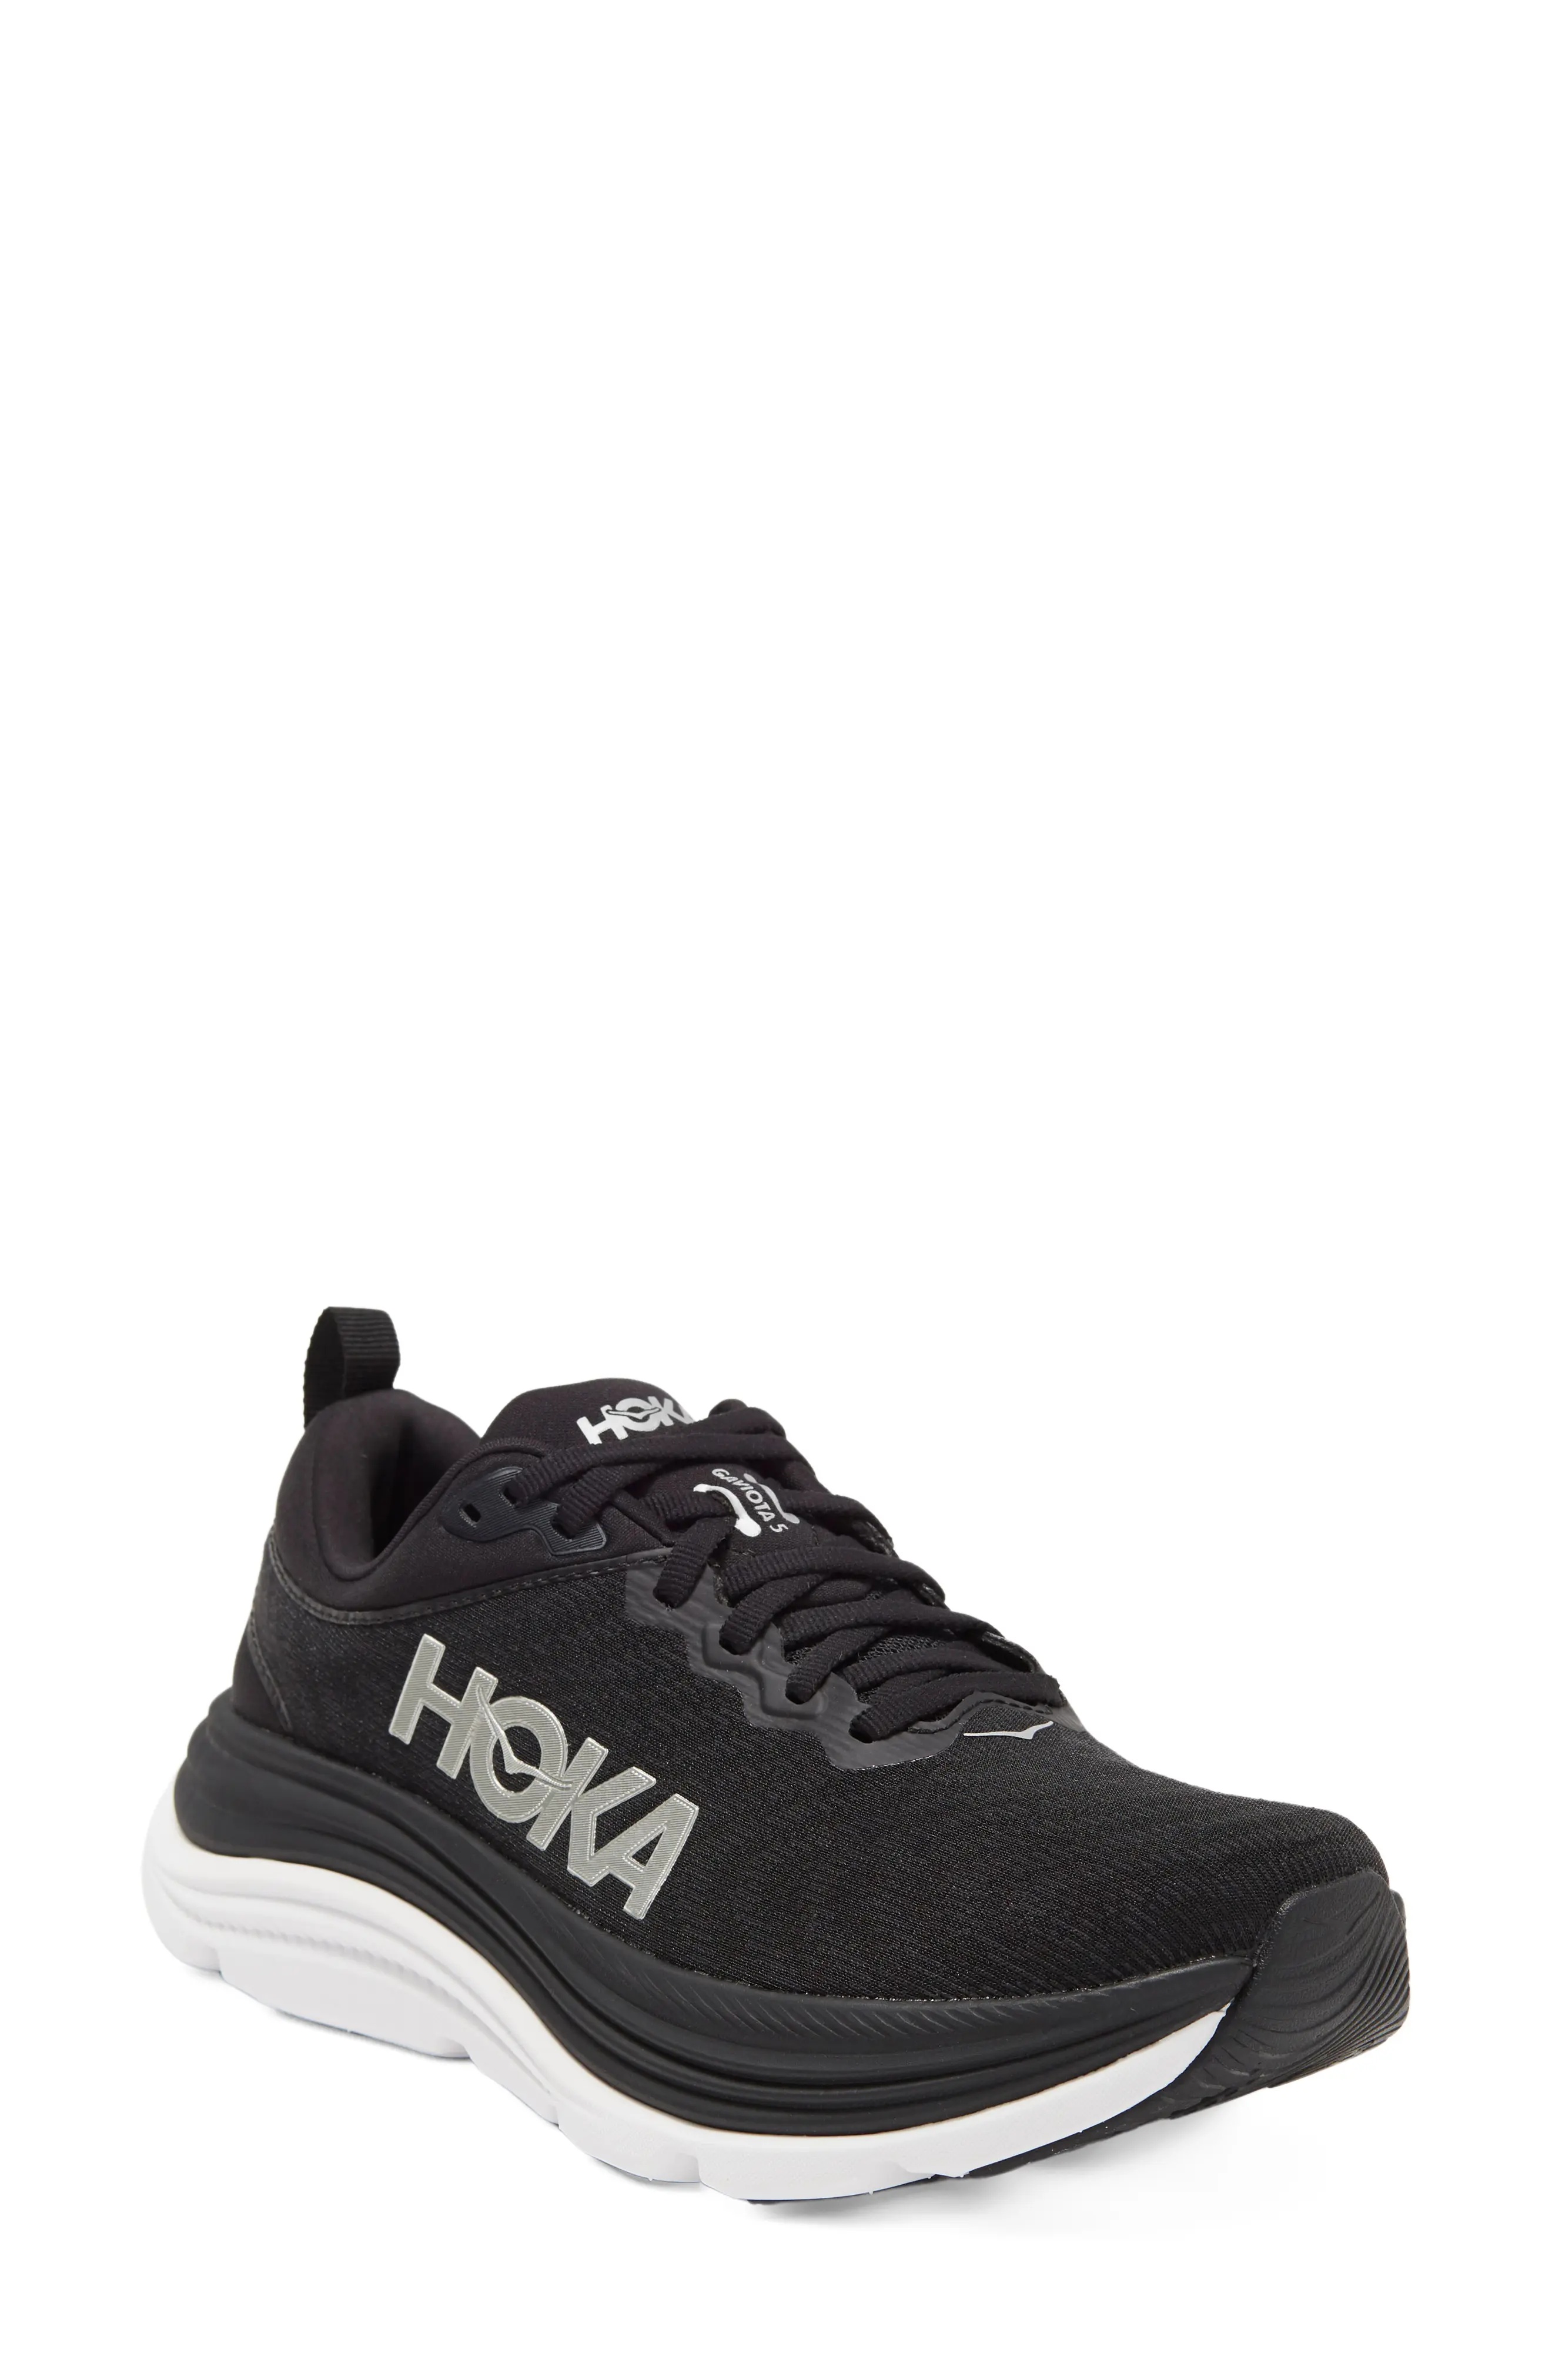 Gaviota 5 Running Shoe in Black /White - 1